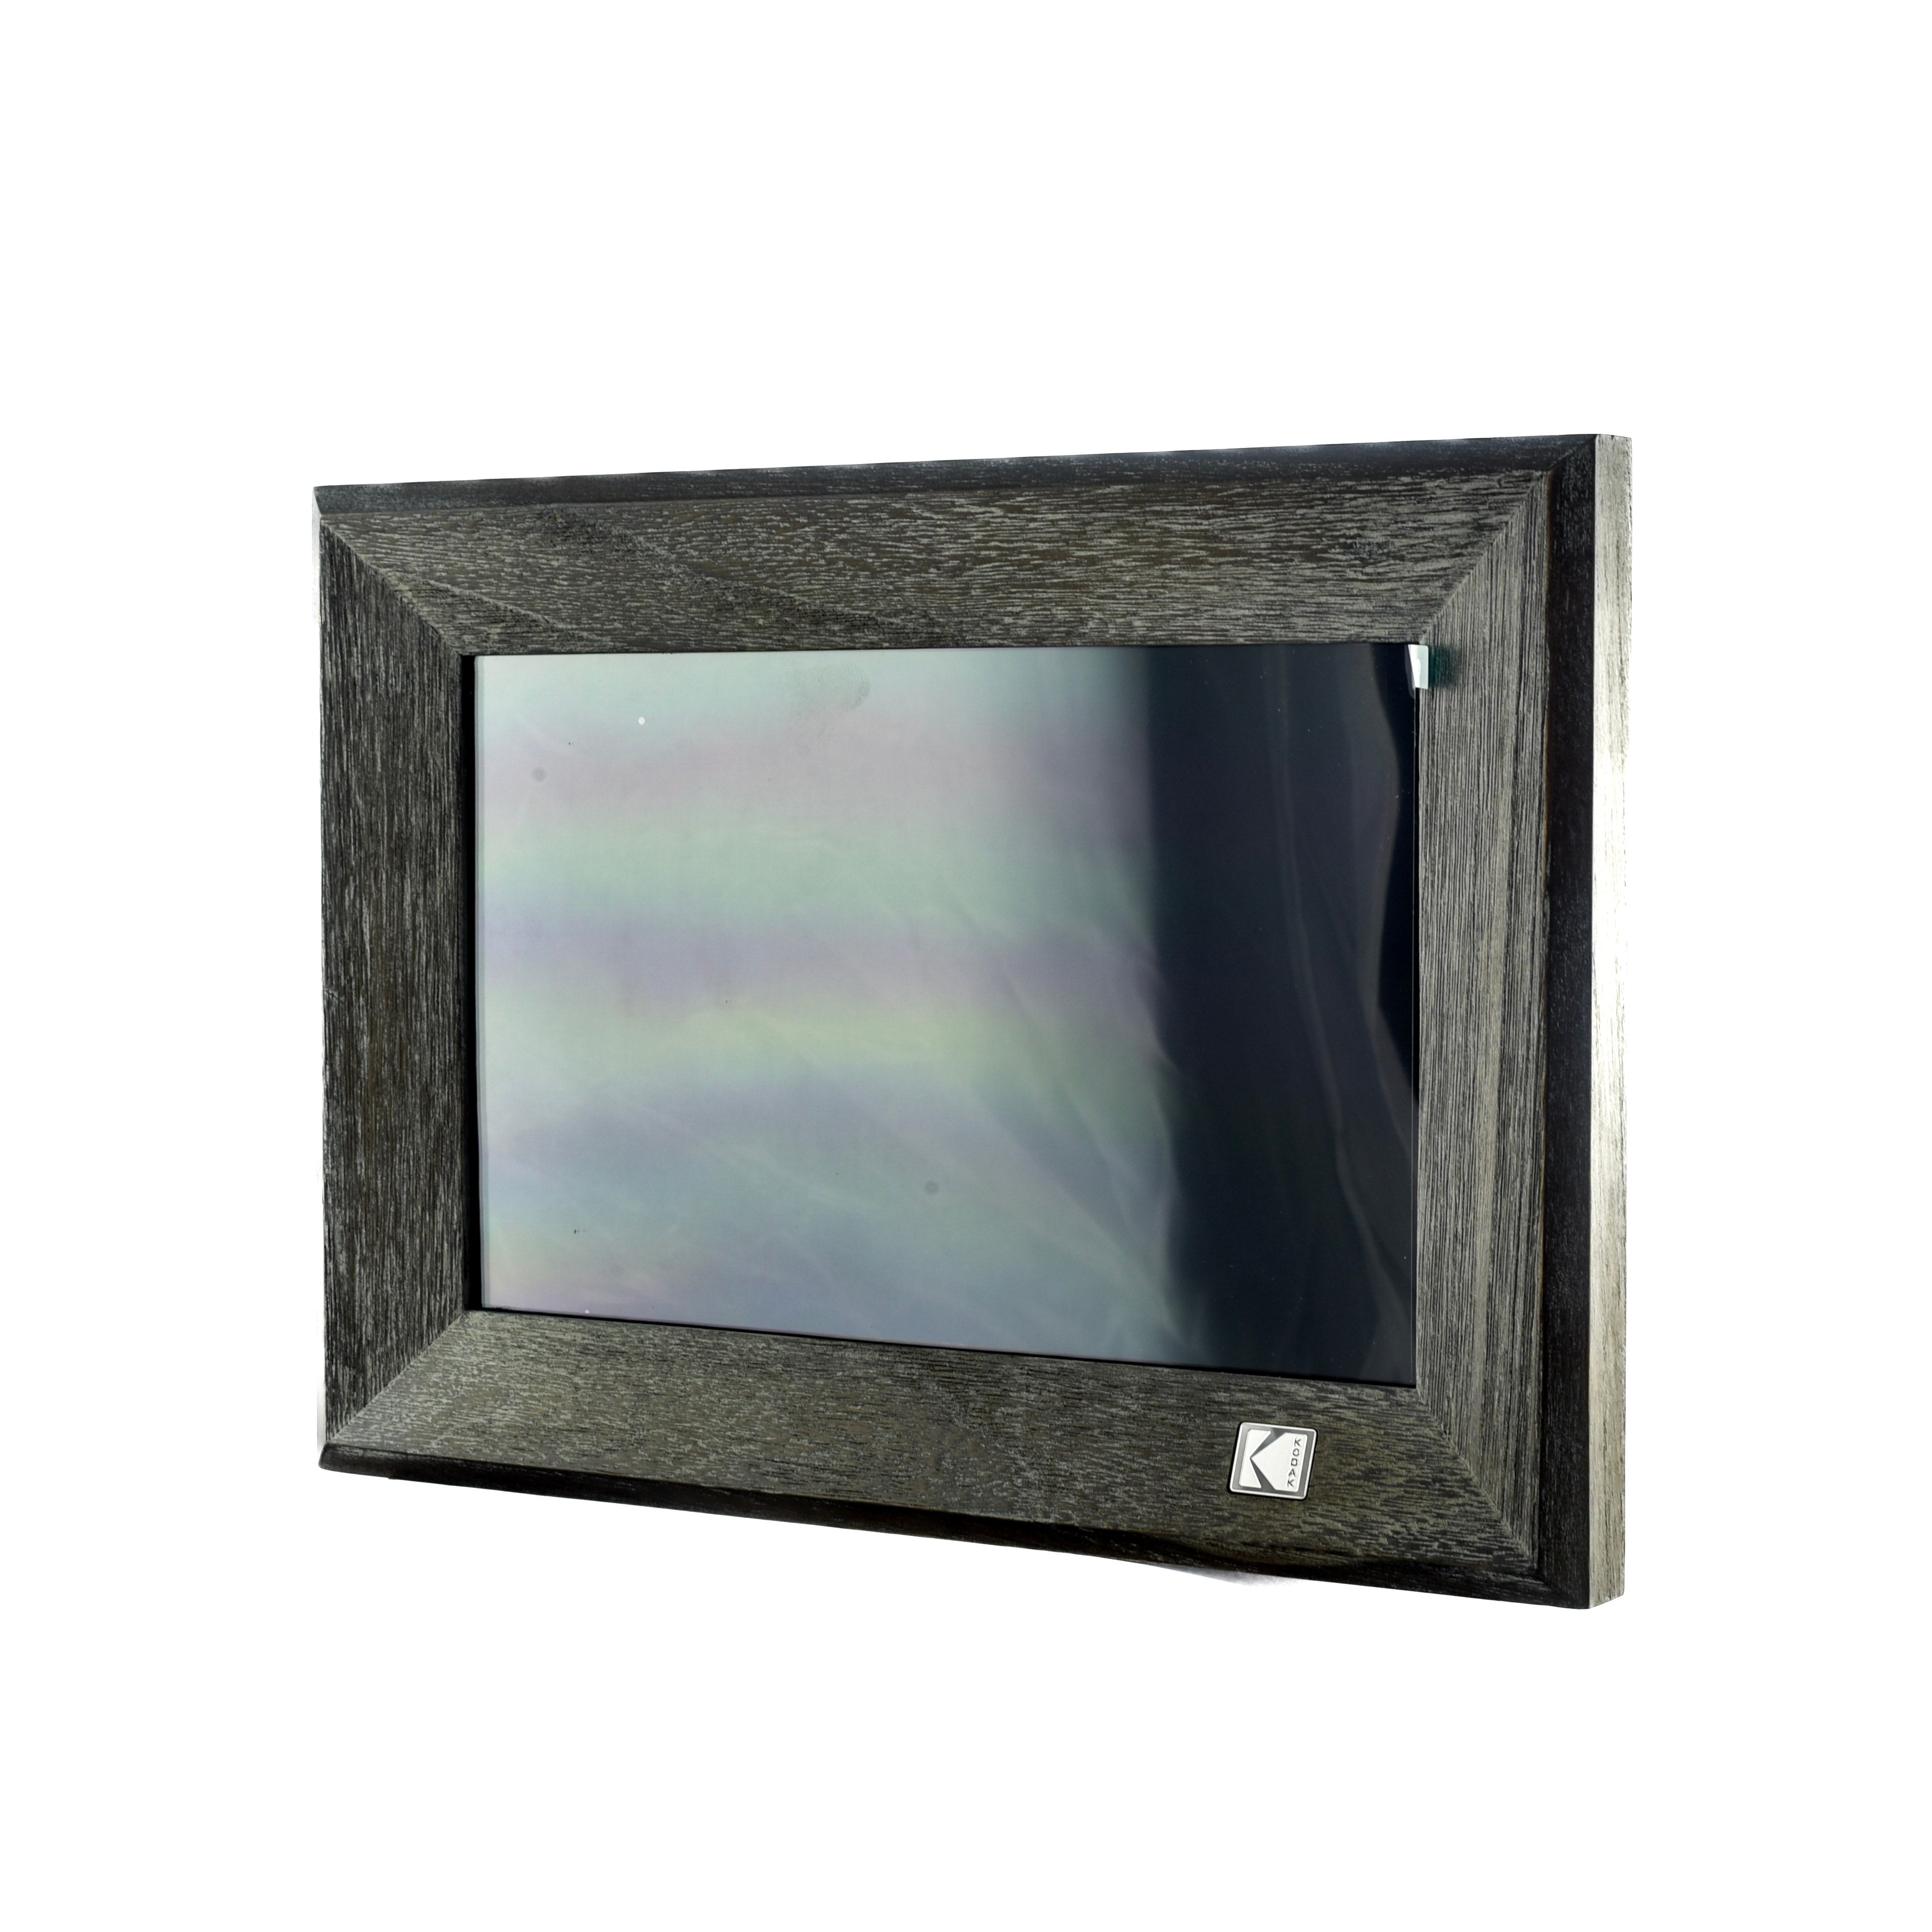 Kodak 10” 1013W Wi-Fi Digital Photo Frame (Grey Wood Finish)